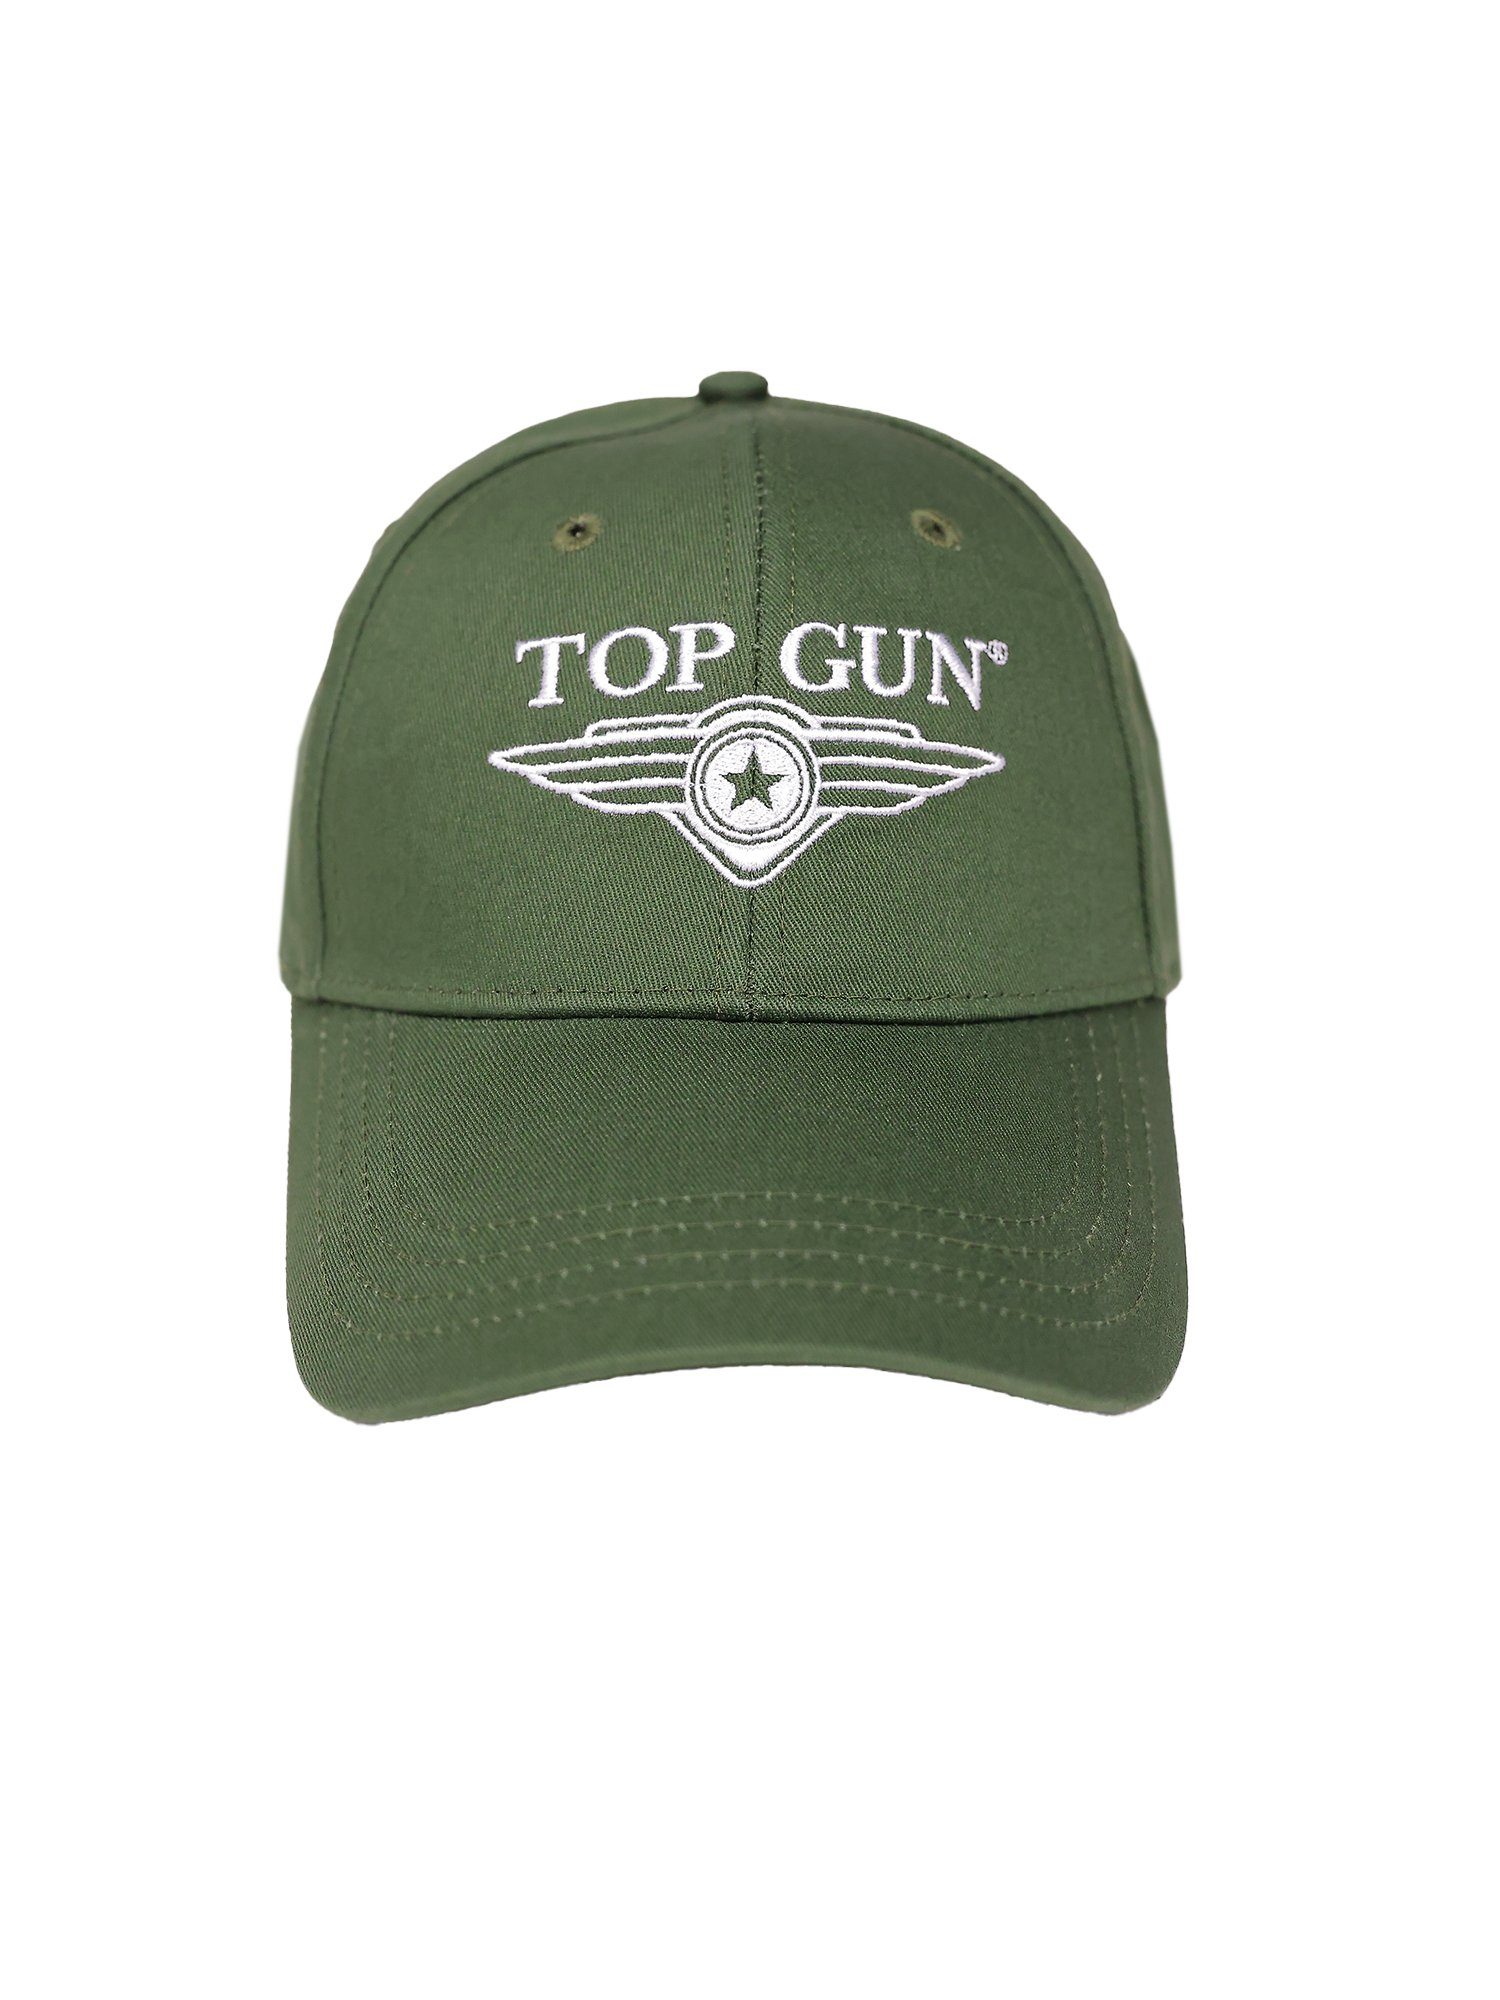 TOP GUN Cap olive TG22013 Snapback